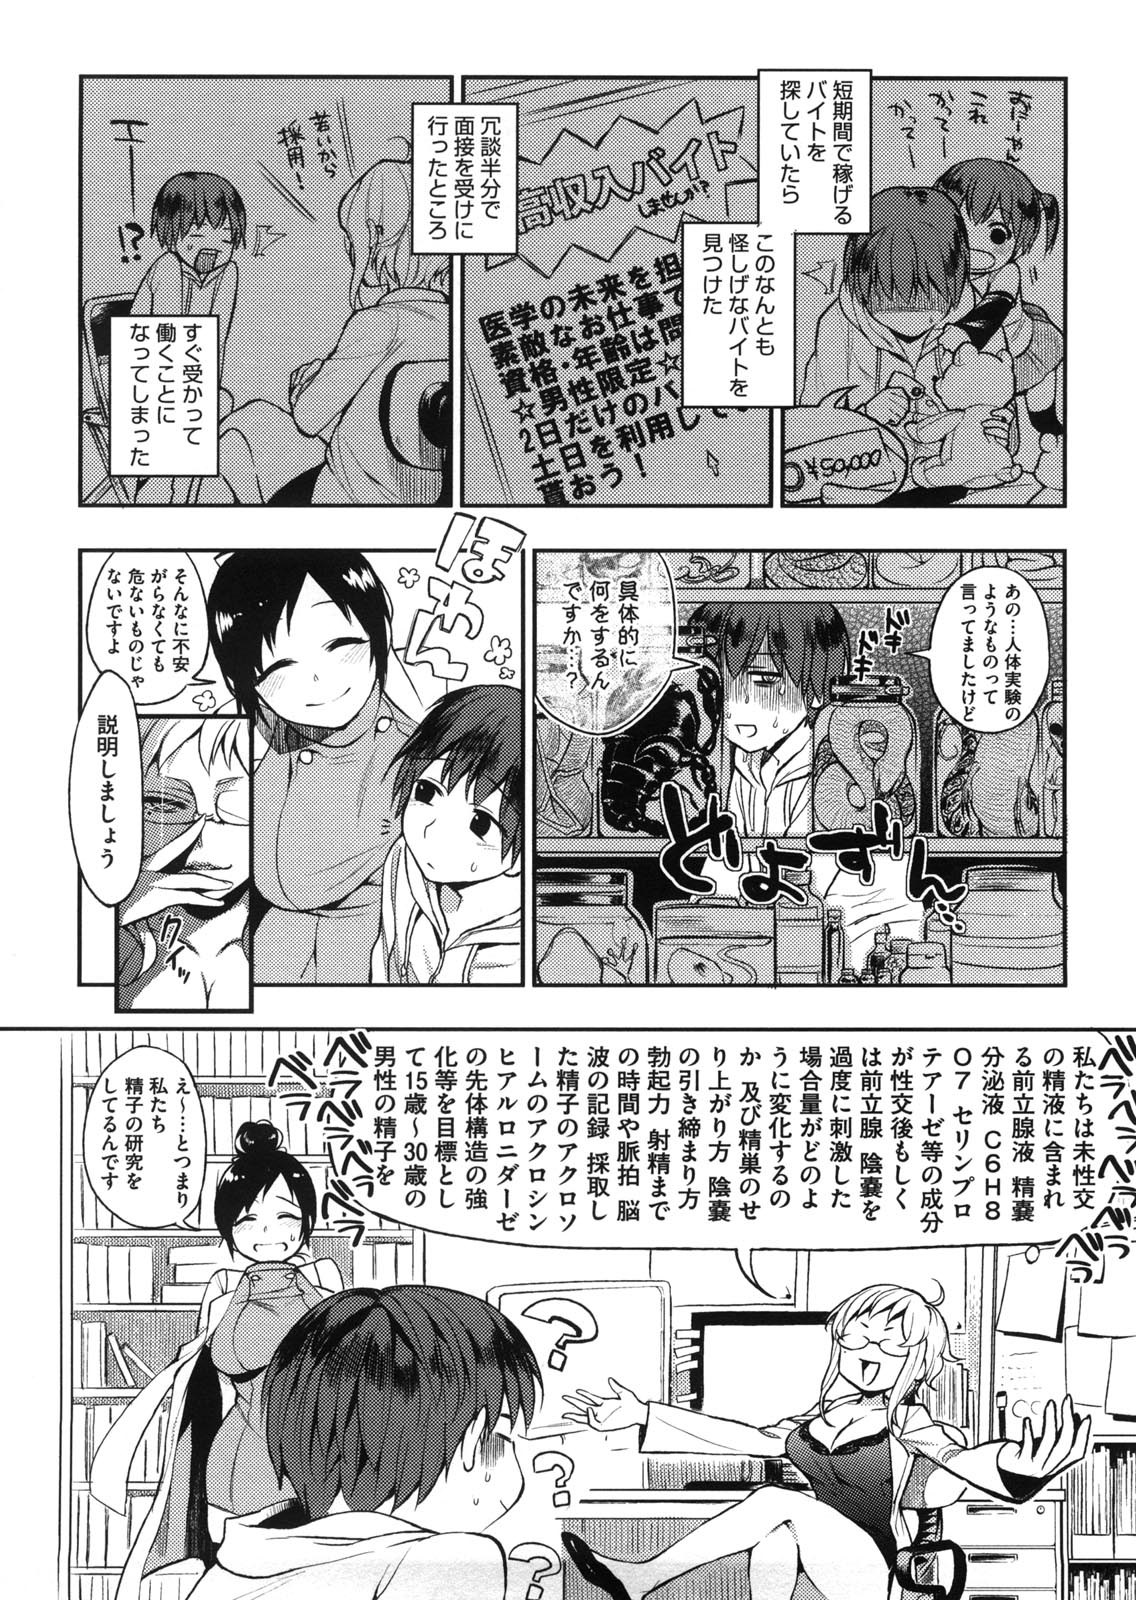 [Igumox] Yosugara Sexology page 13 full